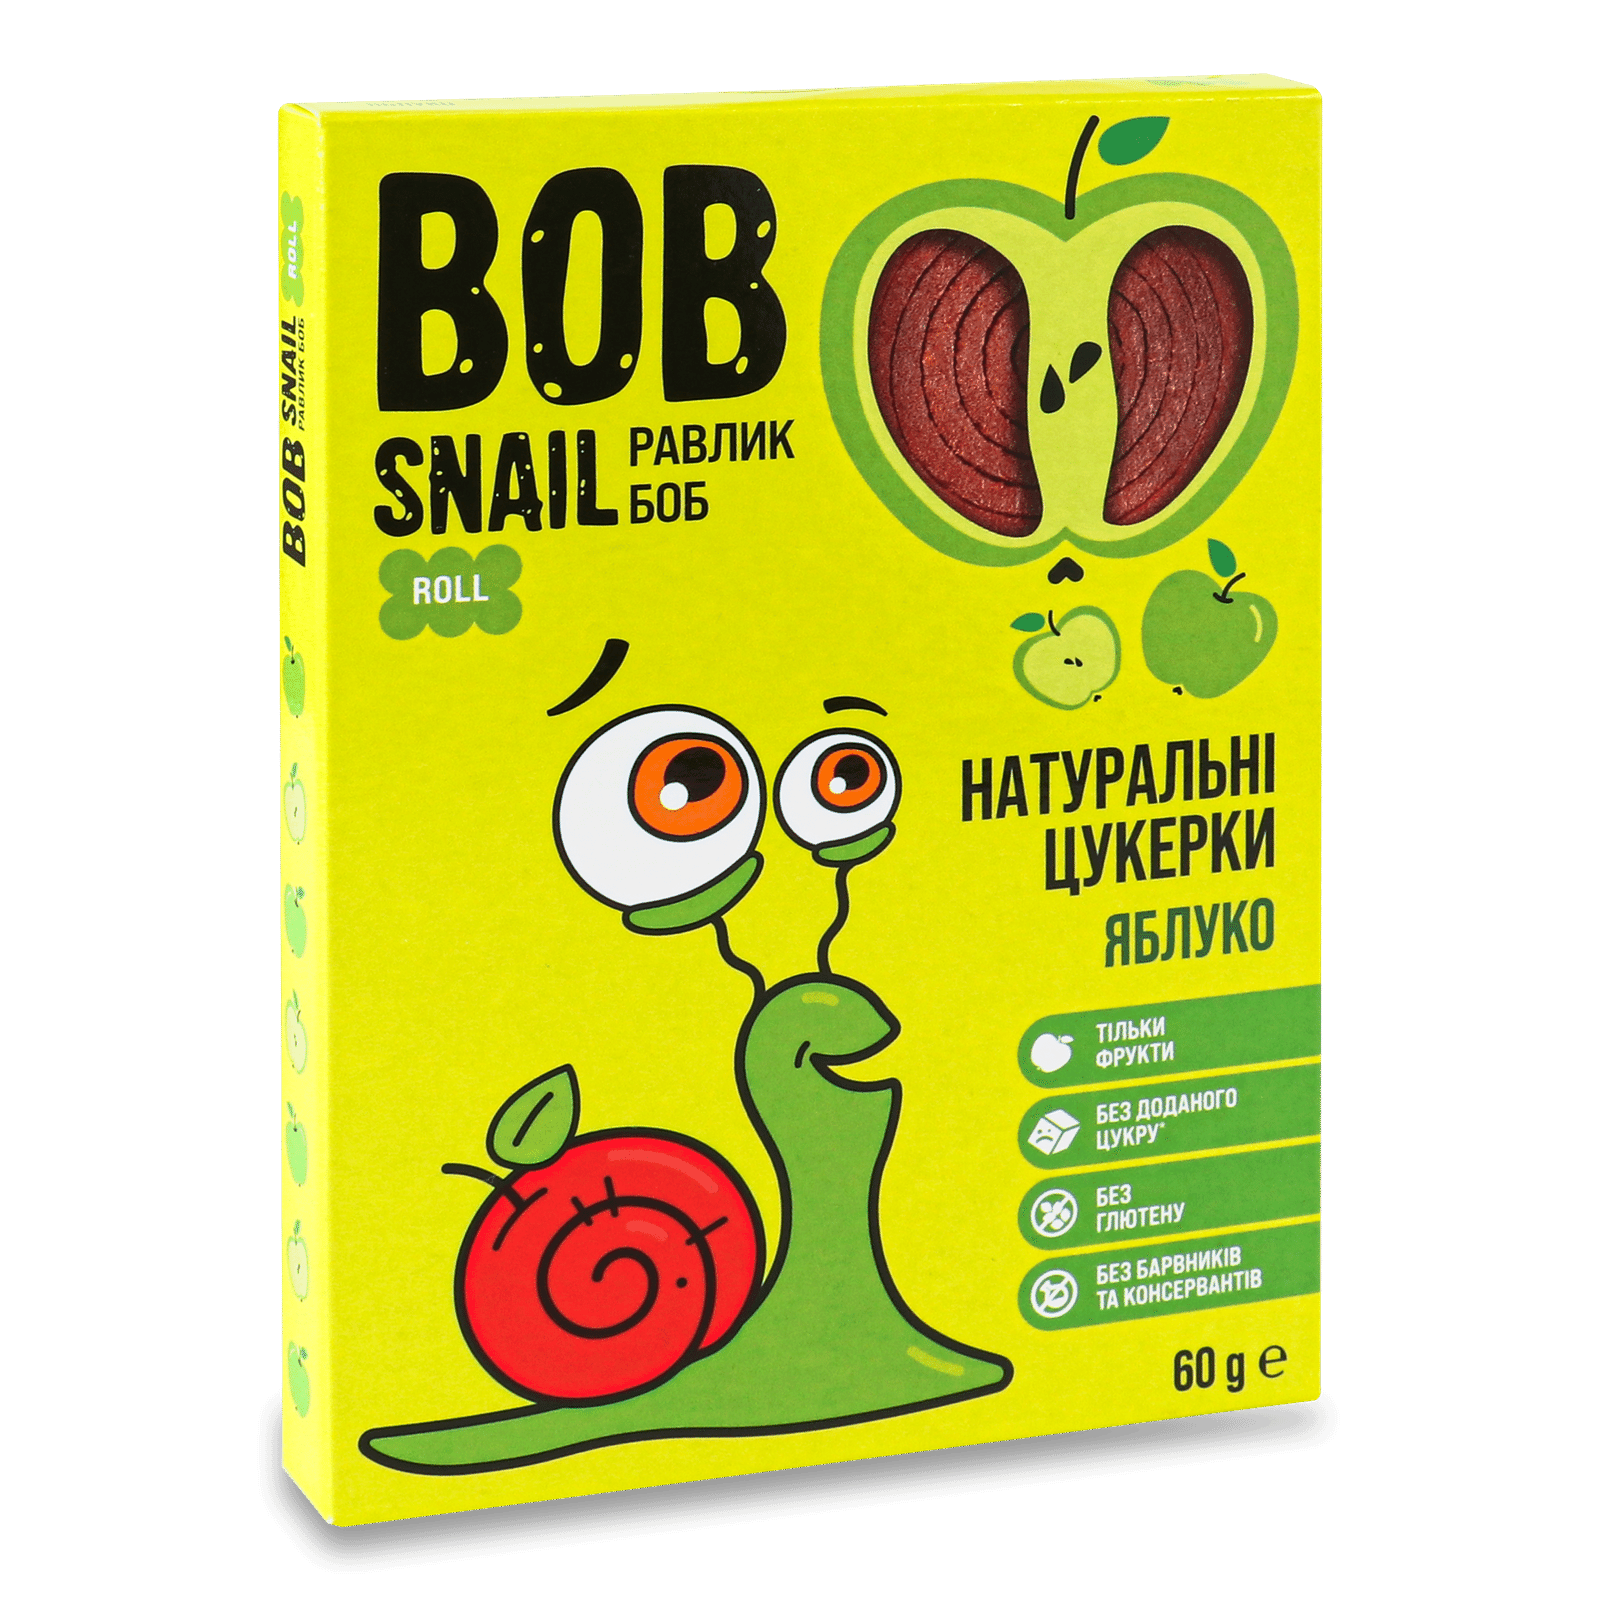 Цукерки Bob Snail натуральні яблучні - 1